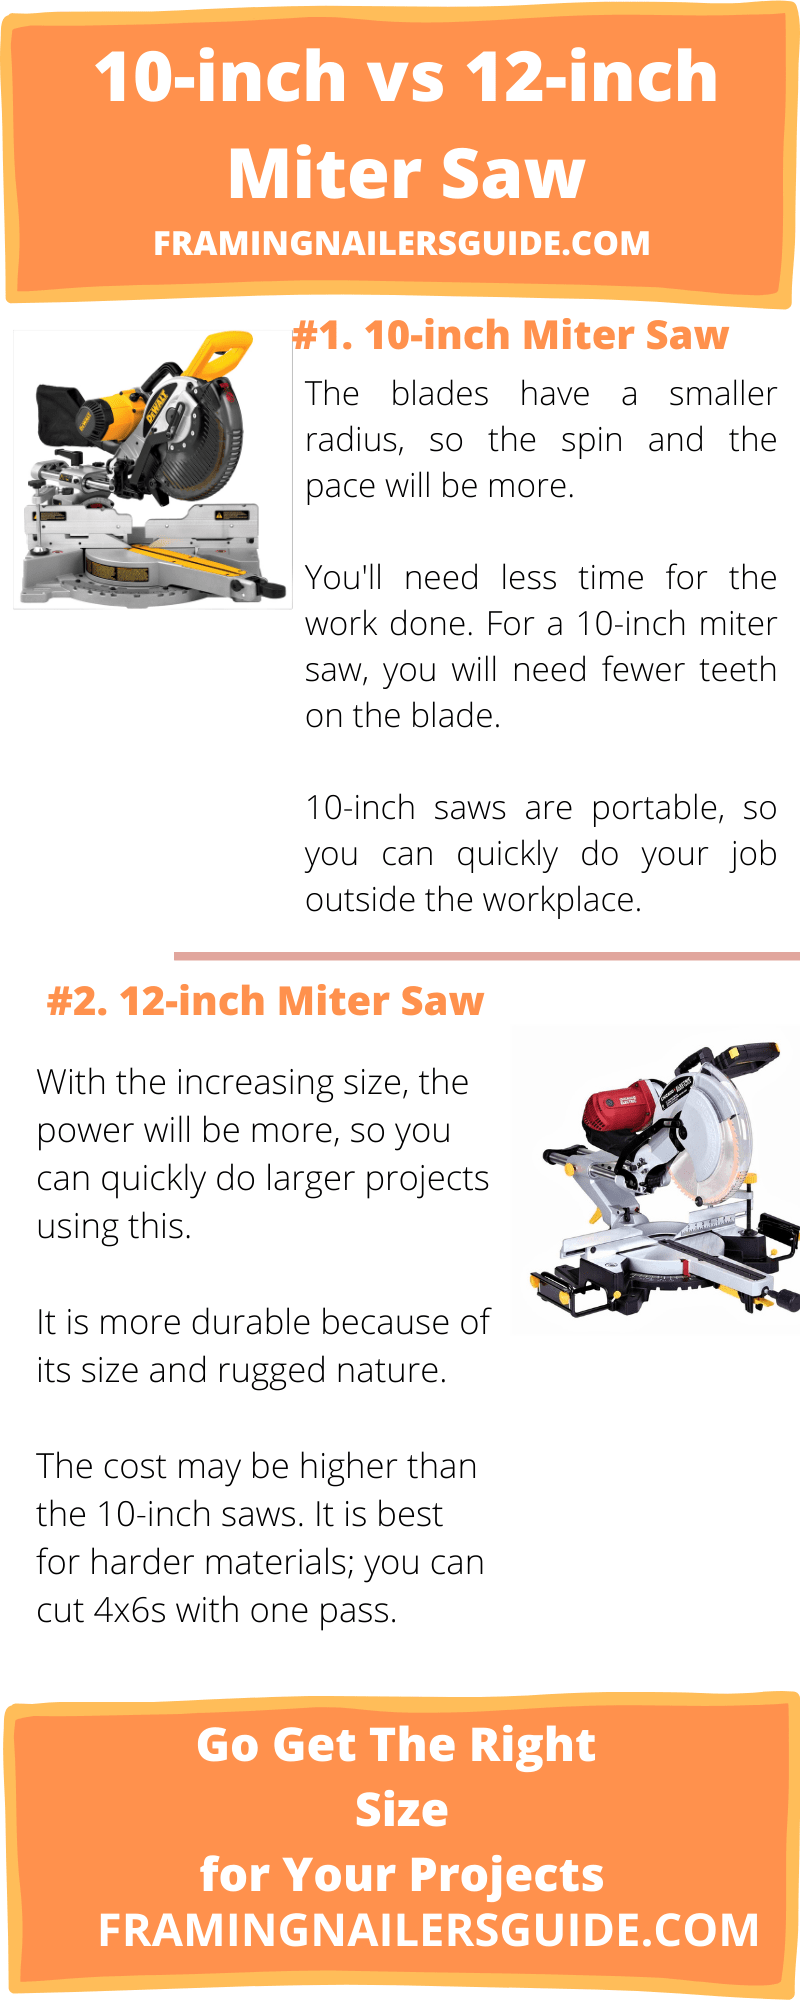 10-inch vs 12-inch miter saw